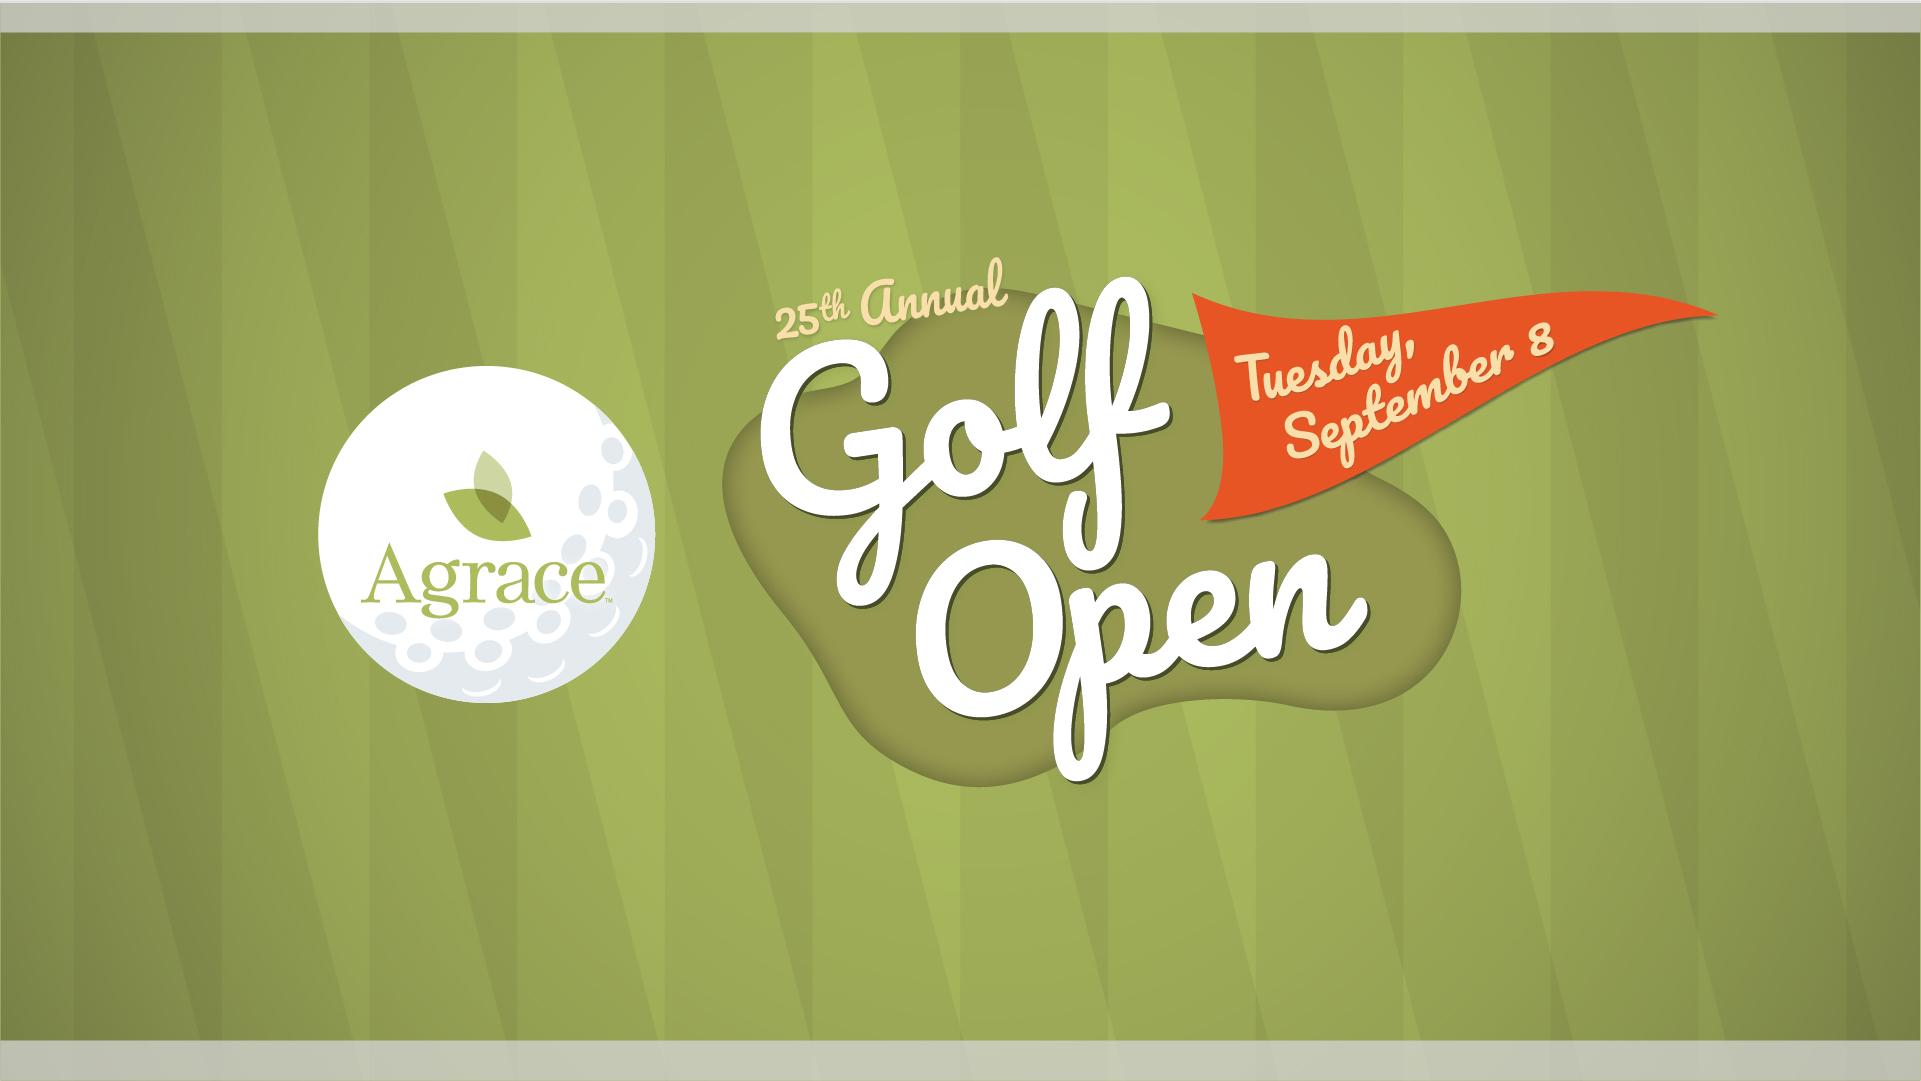 Agrace Golf Open